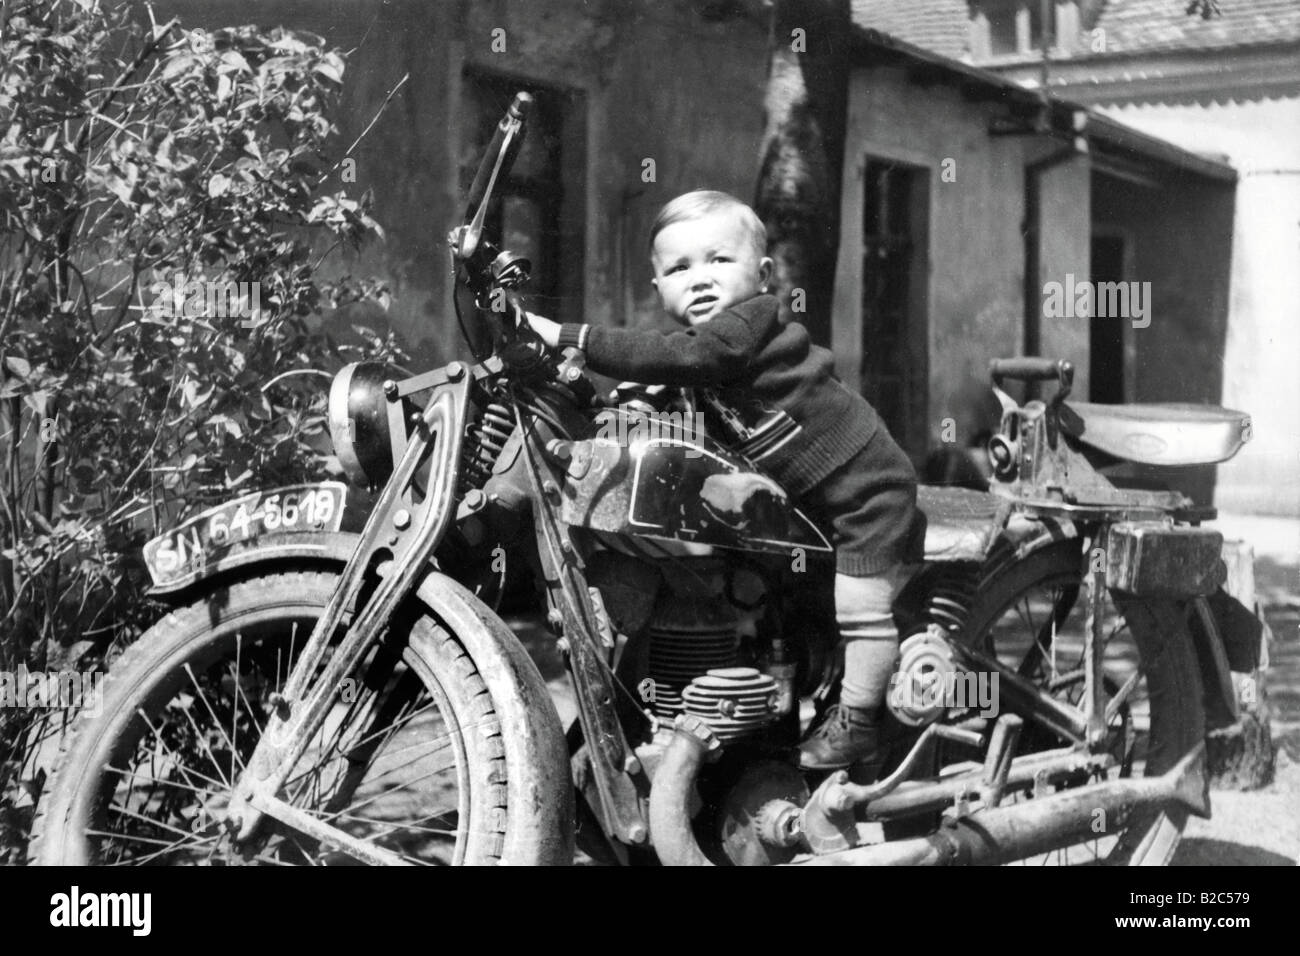 Petit enfant sur une moto, photo historique, vers 1940 Banque D'Images